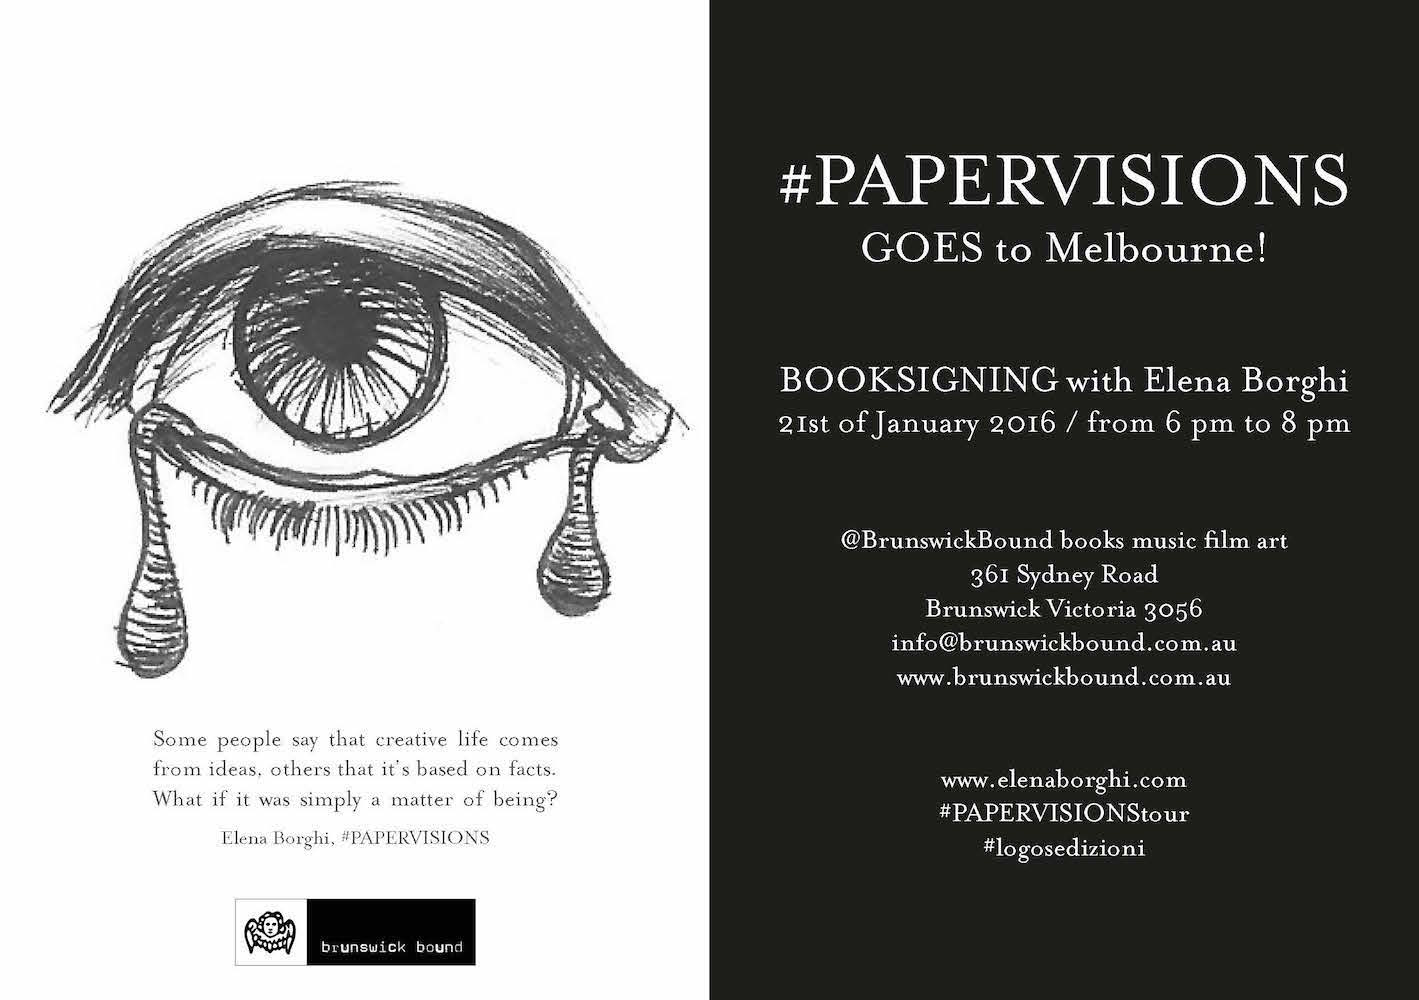 booksigning_paper_visions_elena_borghi_logosedizioni